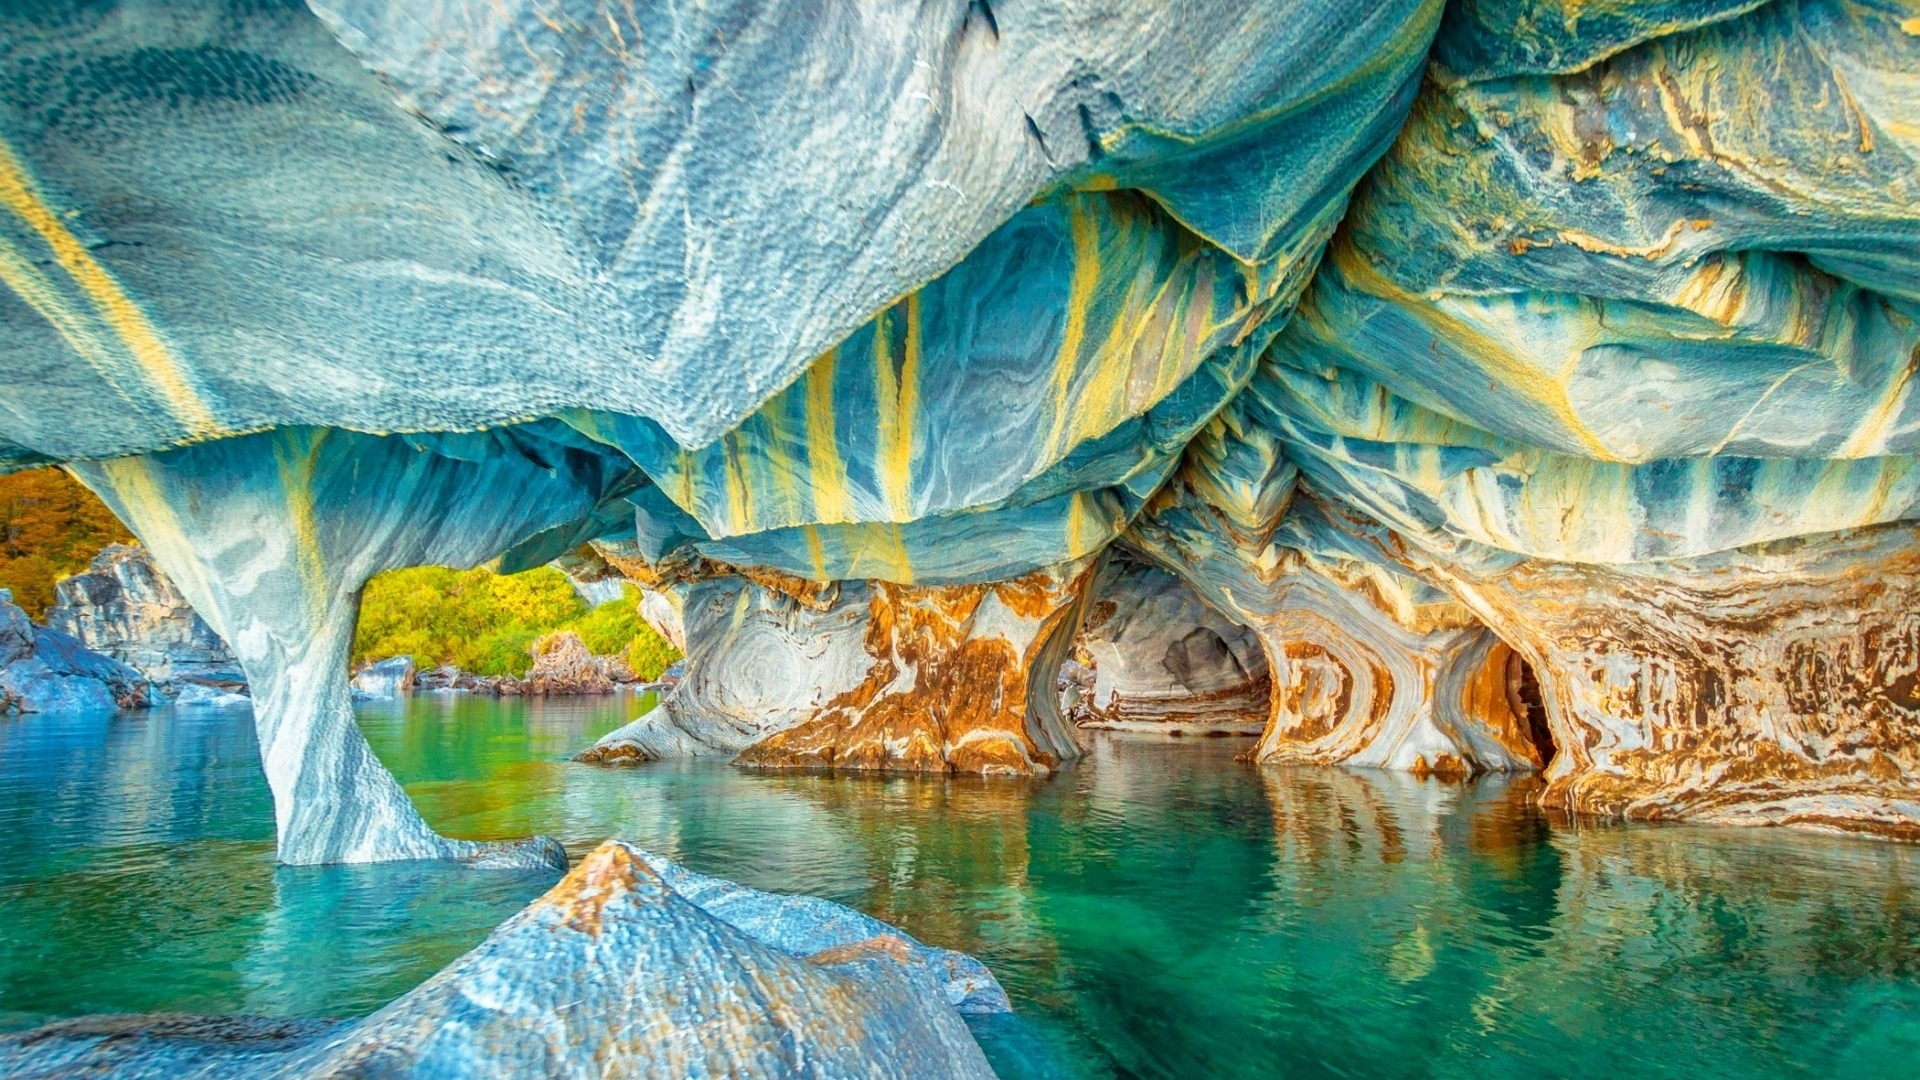 Fondos de pantalla Cueva de marmol colorida